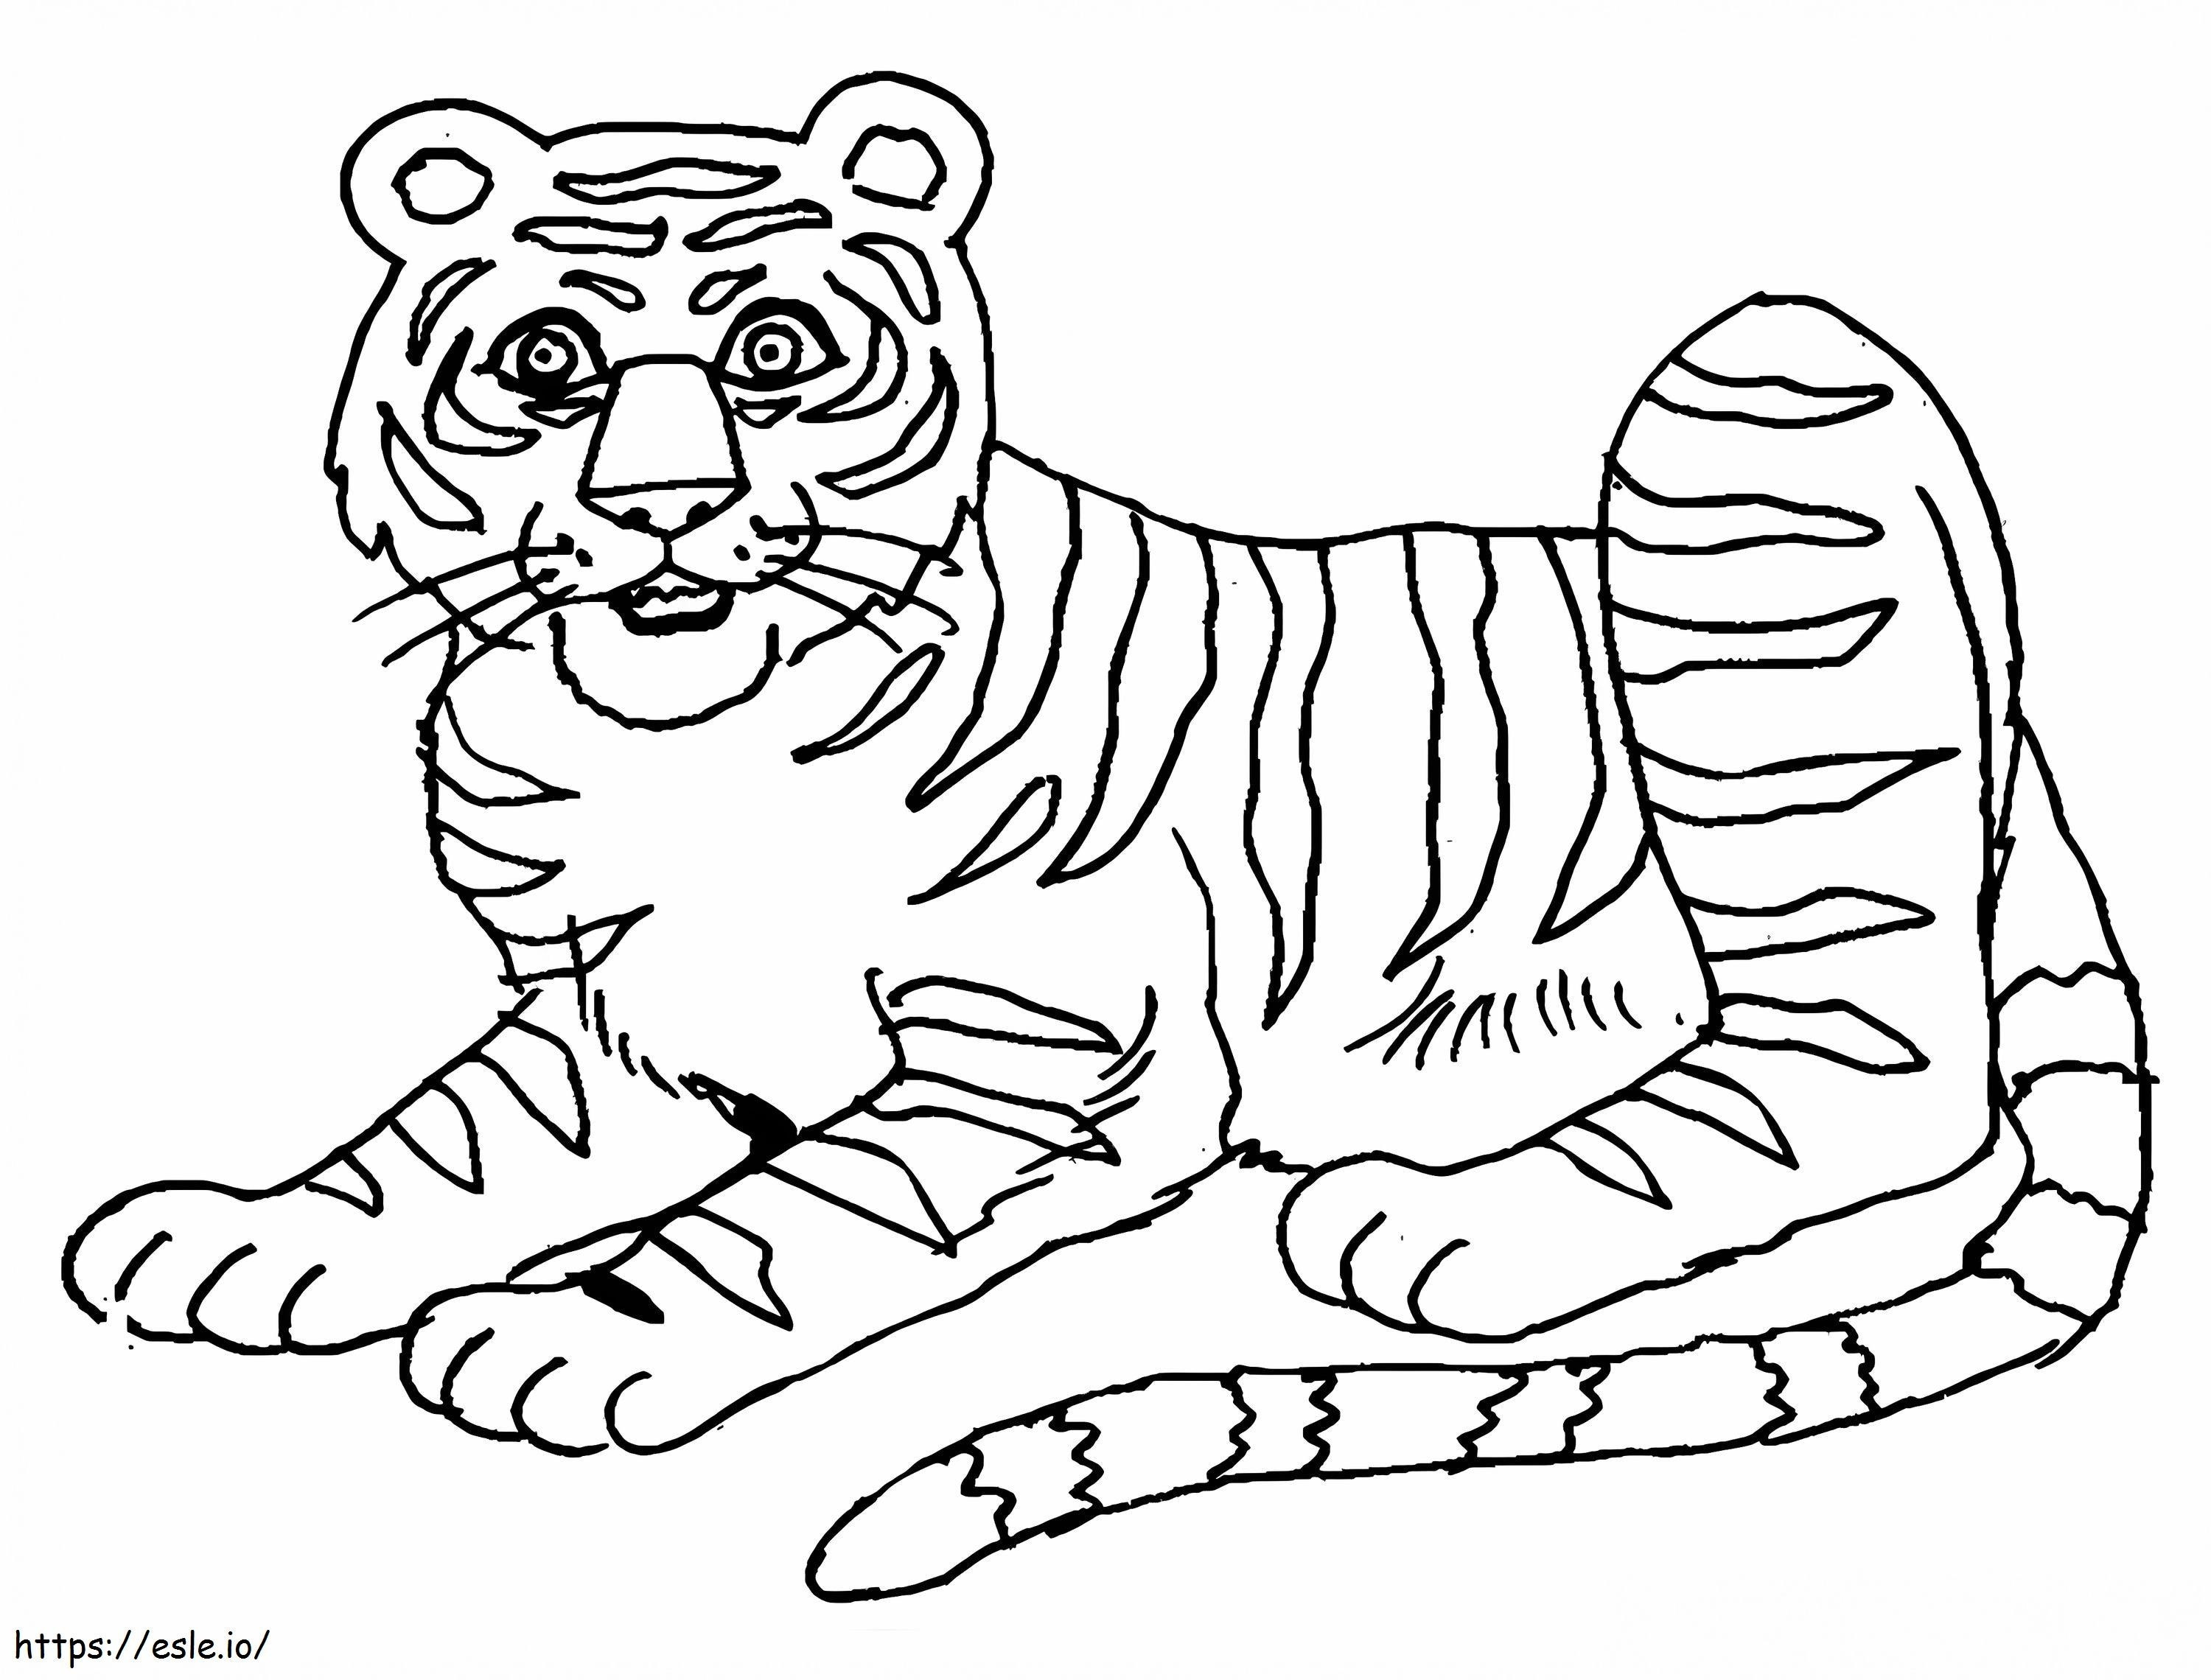 Coloriage Tigre imprimable gratuit à imprimer dessin